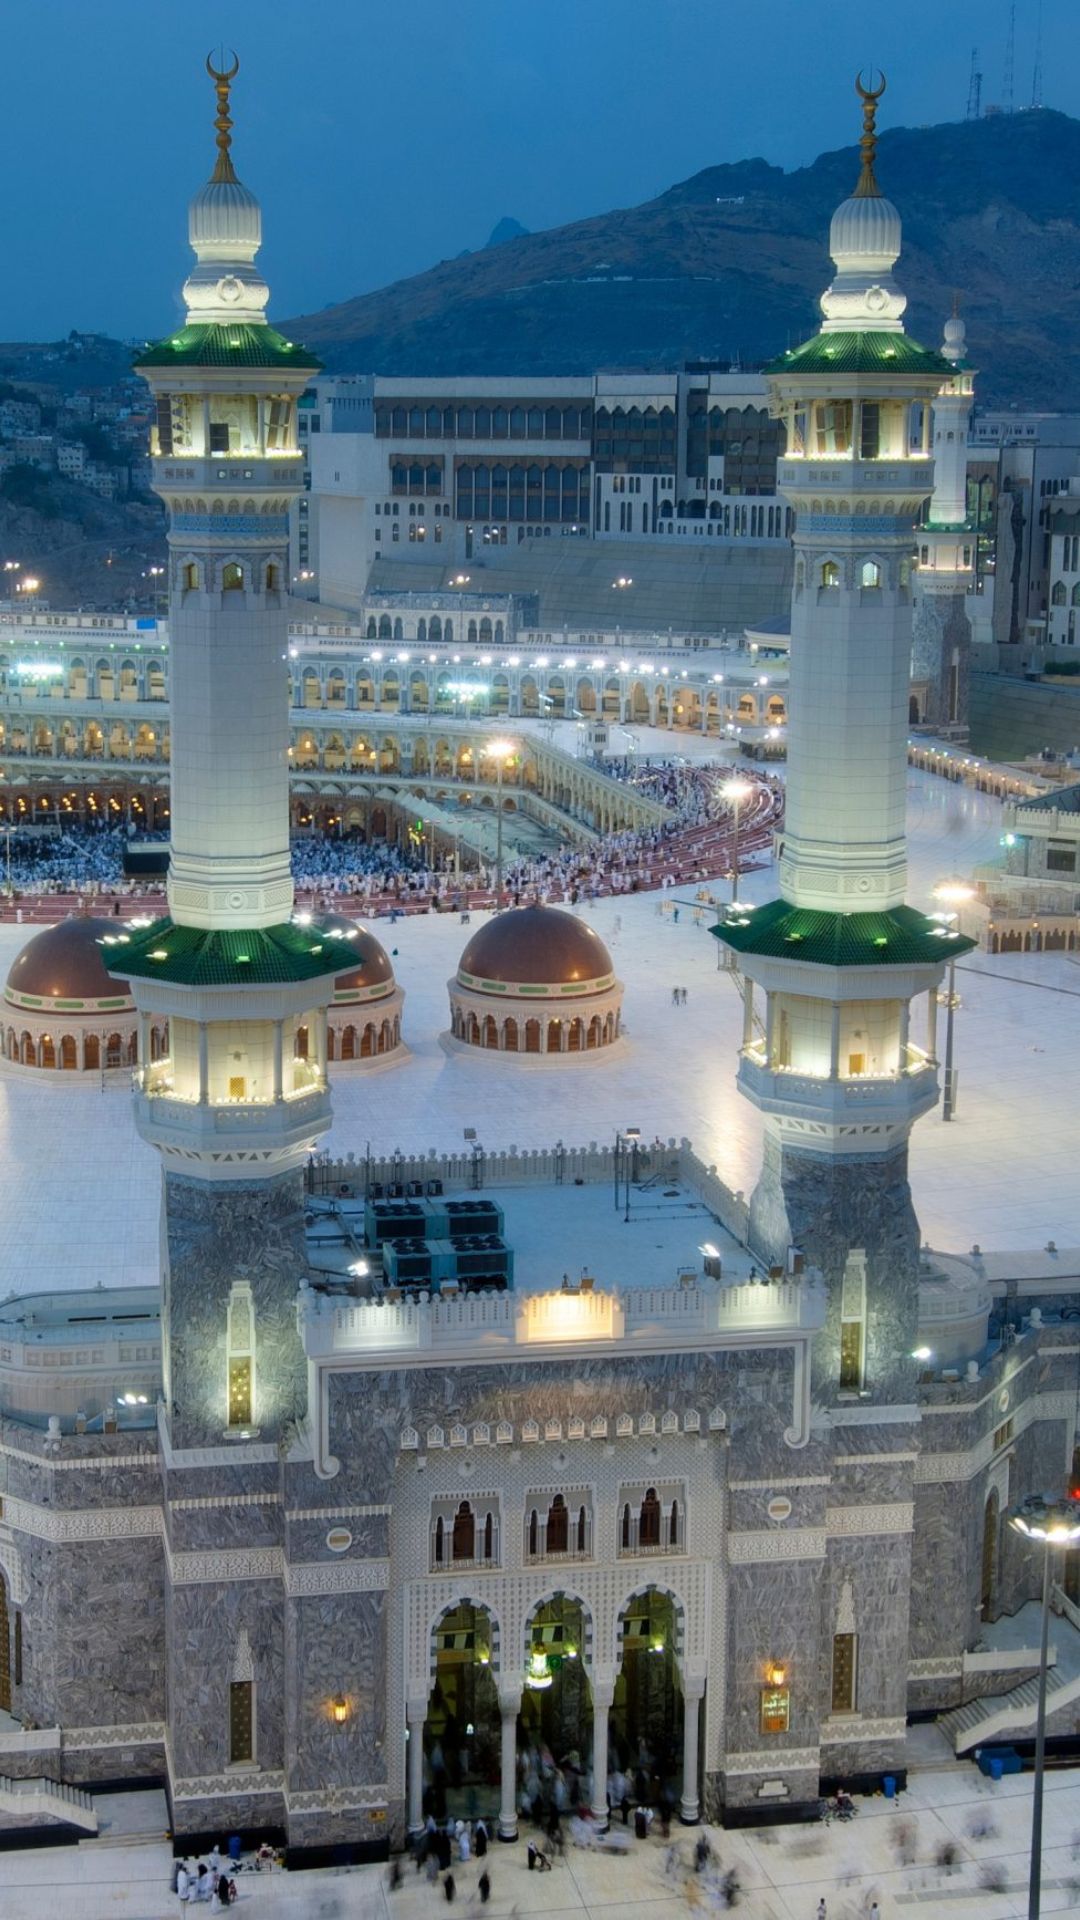 कहां है दुनिया की सबसे बड़ी मस्जिद, जान लीजिए 